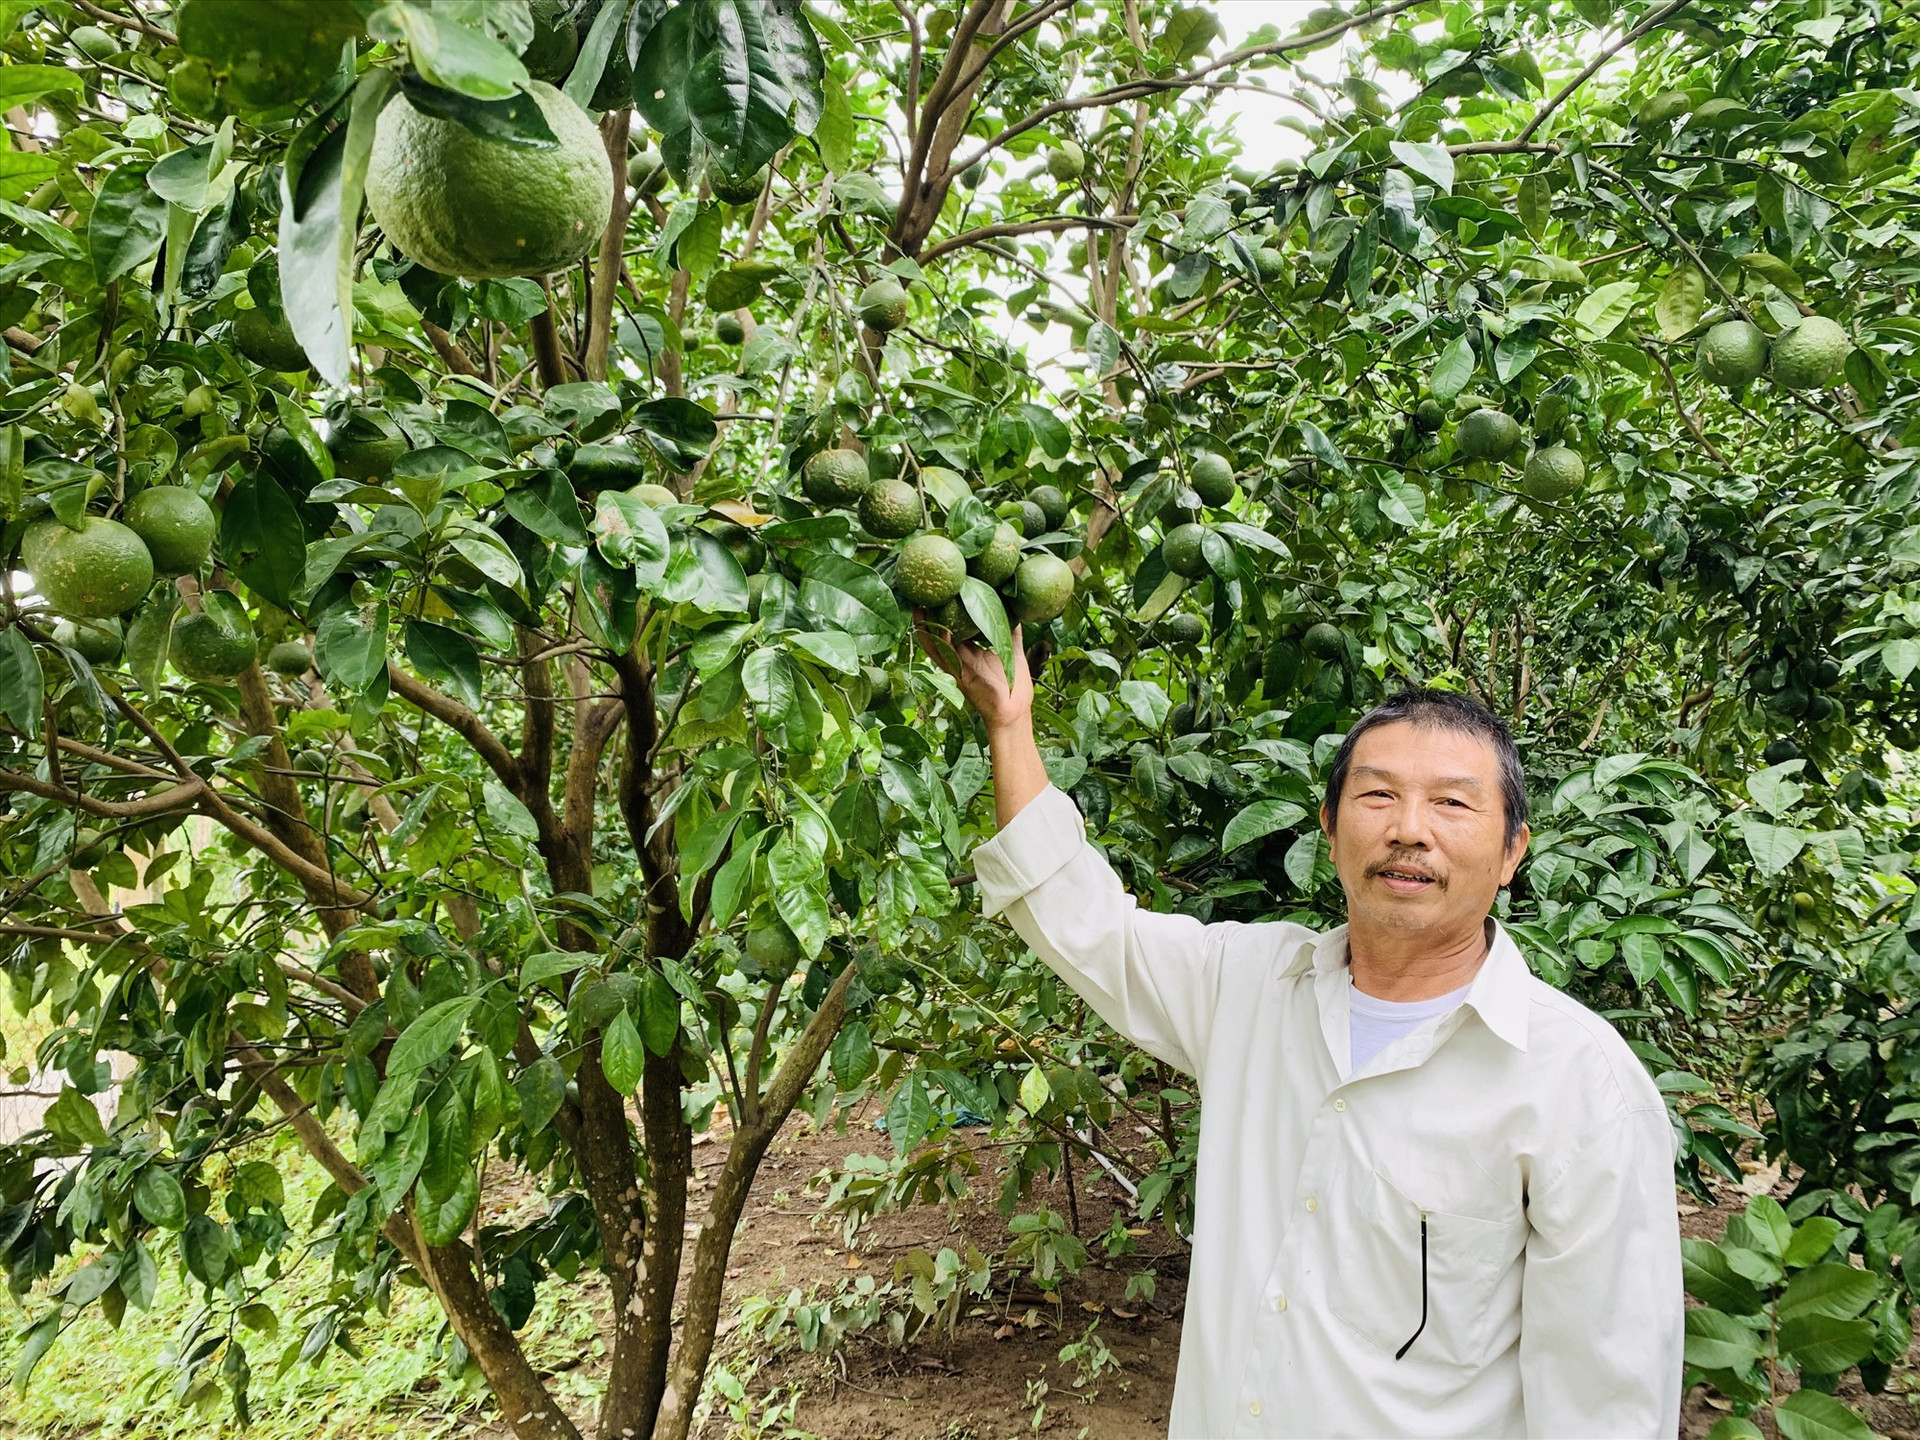 Nhiều khu vườn mẫu trồng các loại cây ăn quả ở Duy Hòa mang lại nguồn thu nhập cao cho người dân. Ảnh: T.N